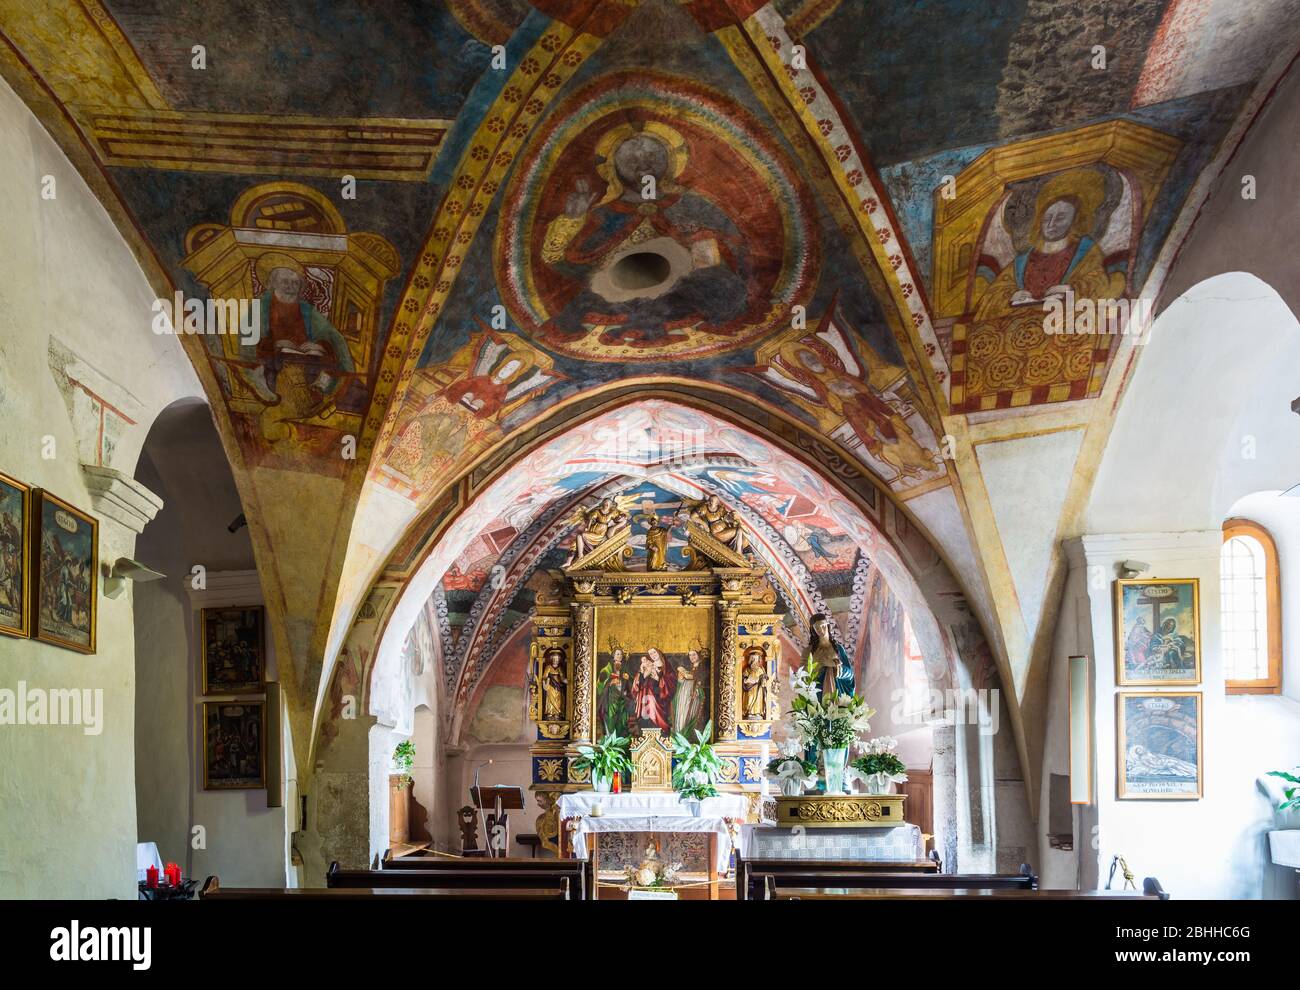 Église de S. Marcello à Dardine, trente, Italie - 29 janvier 2019. L'église conserve les fresques médiévales de valatabel. Intérieur de l'église Banque D'Images